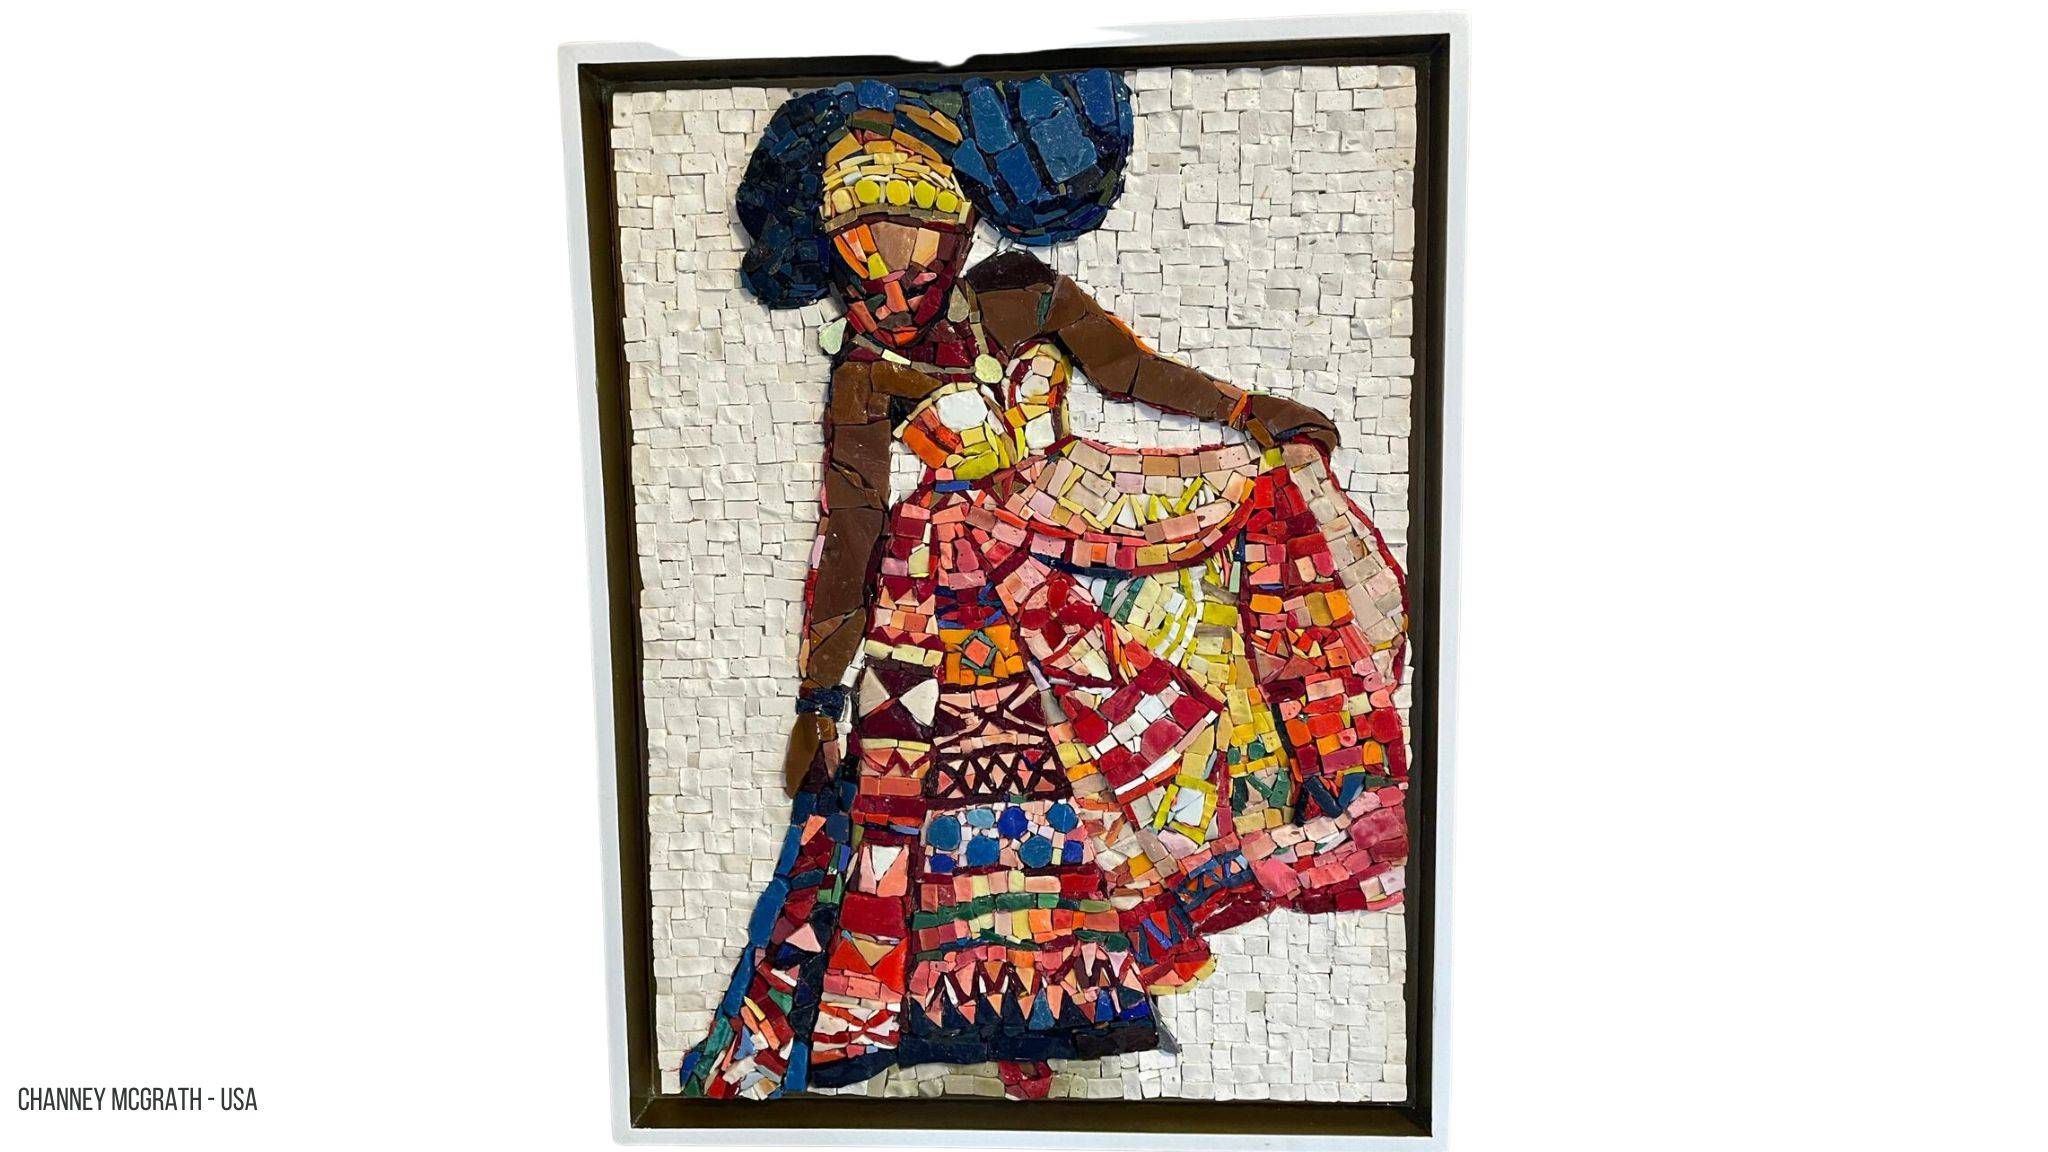 Mozaiek van een Afrikaanse vrouw met een bontgekleurde jurk aan voor een witte achtergrond. Gebruikte materiaal is Smalti